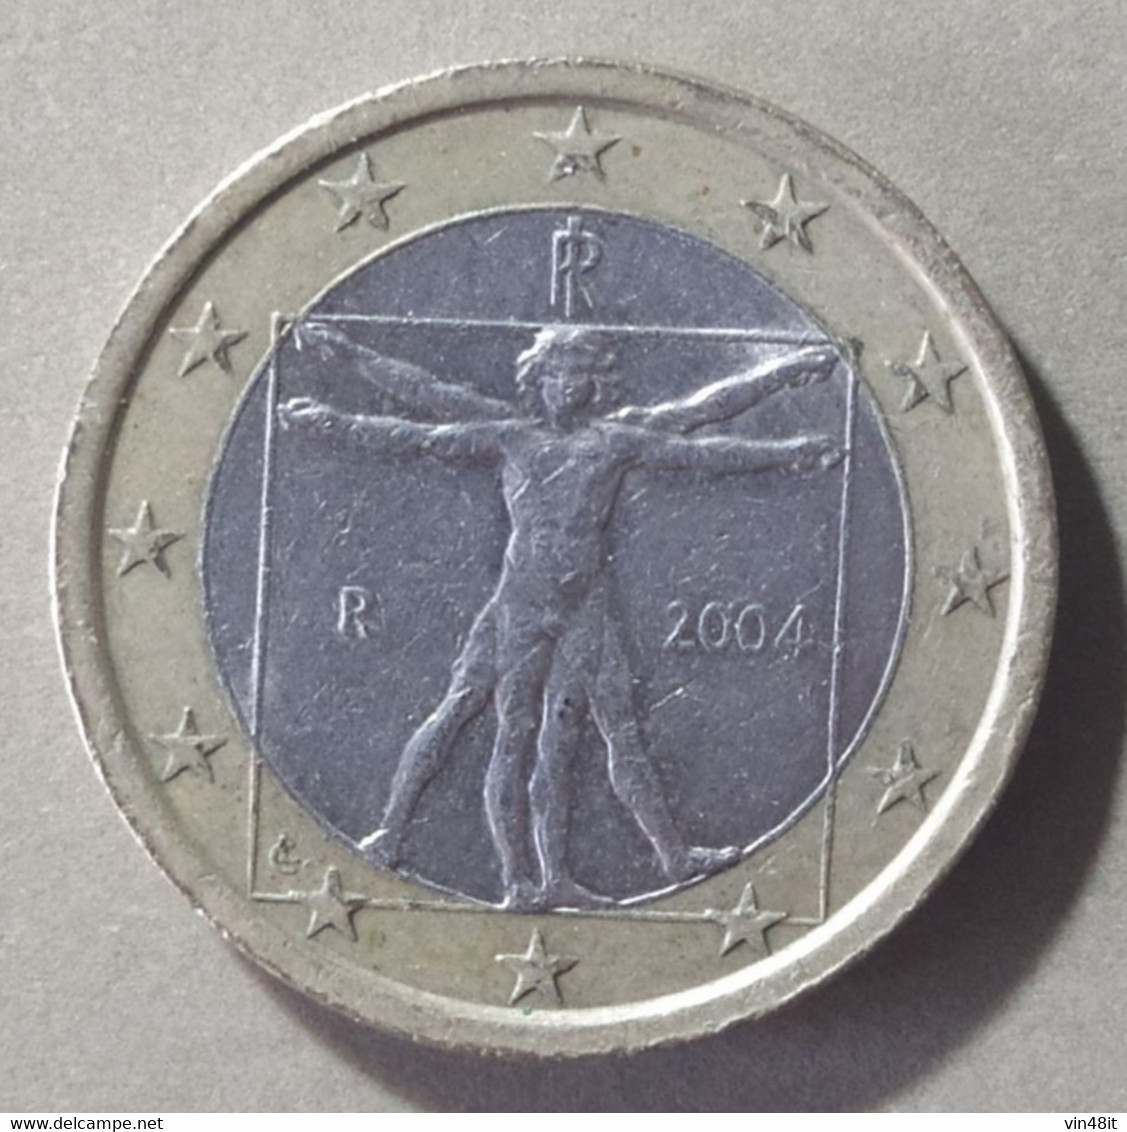 2004 - ITALIA  REPUBBLICA    -  MONETA IN EURO -  DEL VALORE DI 1,00  EURO  - USATA - - Italy